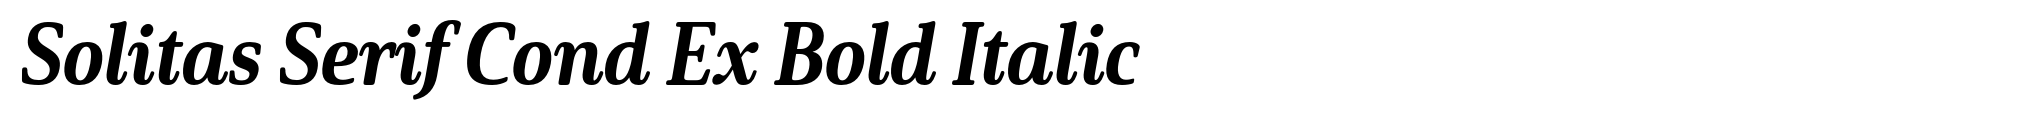 Solitas Serif Cond Ex Bold Italic image